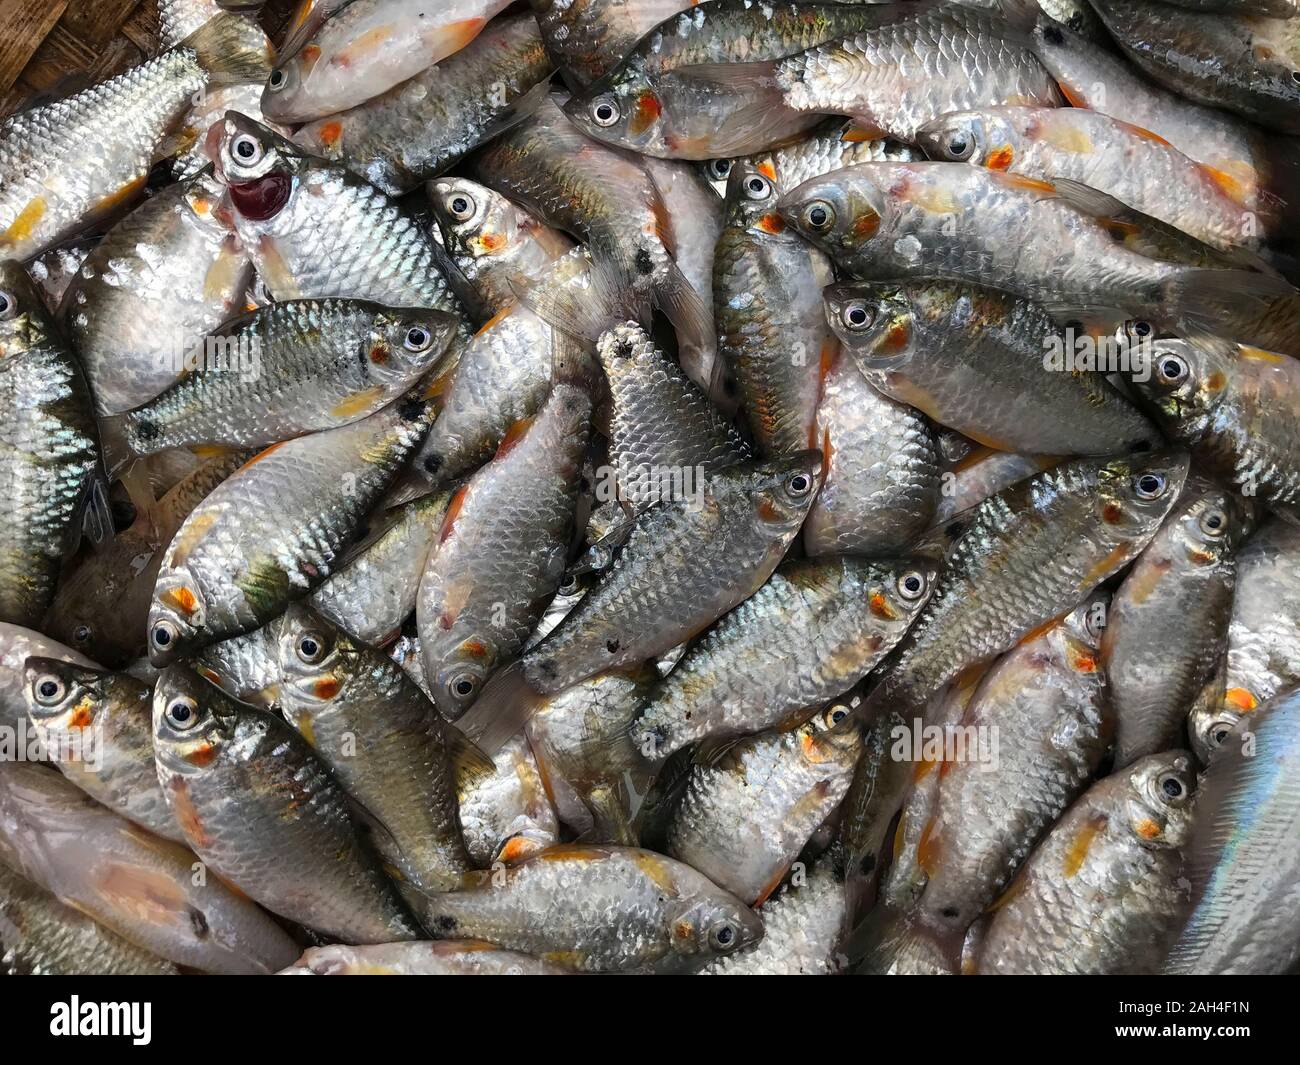 Freshwater fishes of Bangladesh. Stock Photo